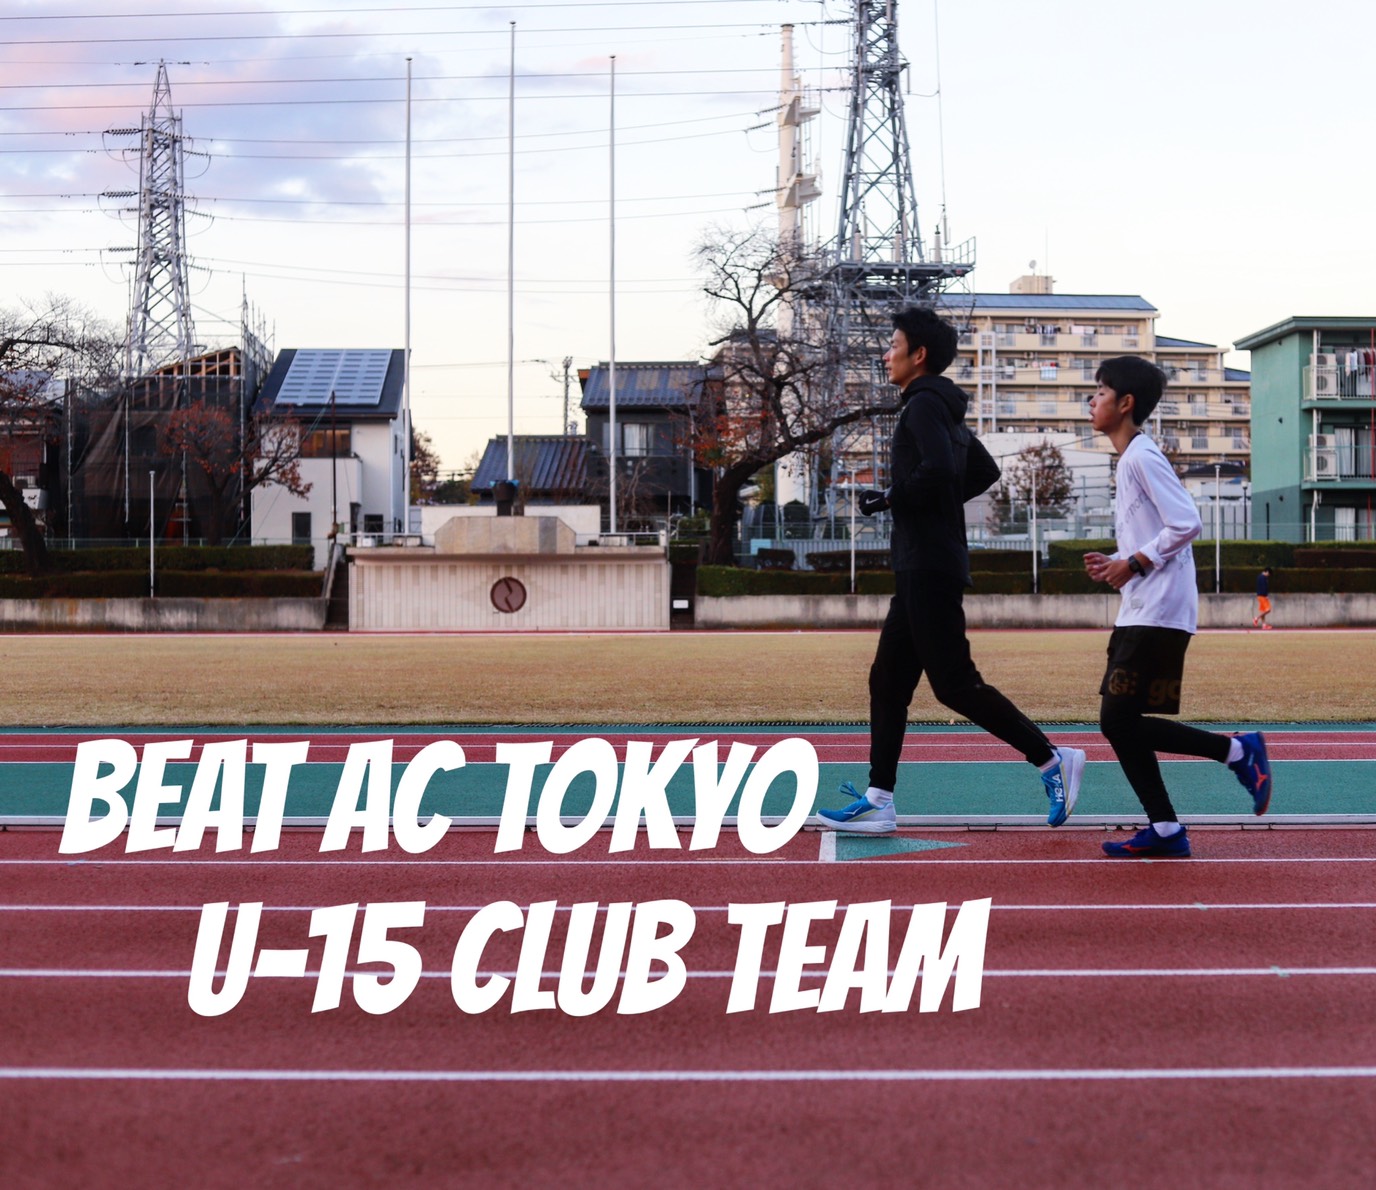 本気 で陸上競技に取り組みたい中学生向けクラブチーム Beat Ac Tokyo U 15 が21年4月始動 メンバー募集を開始 株式会社beat Social Sportsのプレスリリース